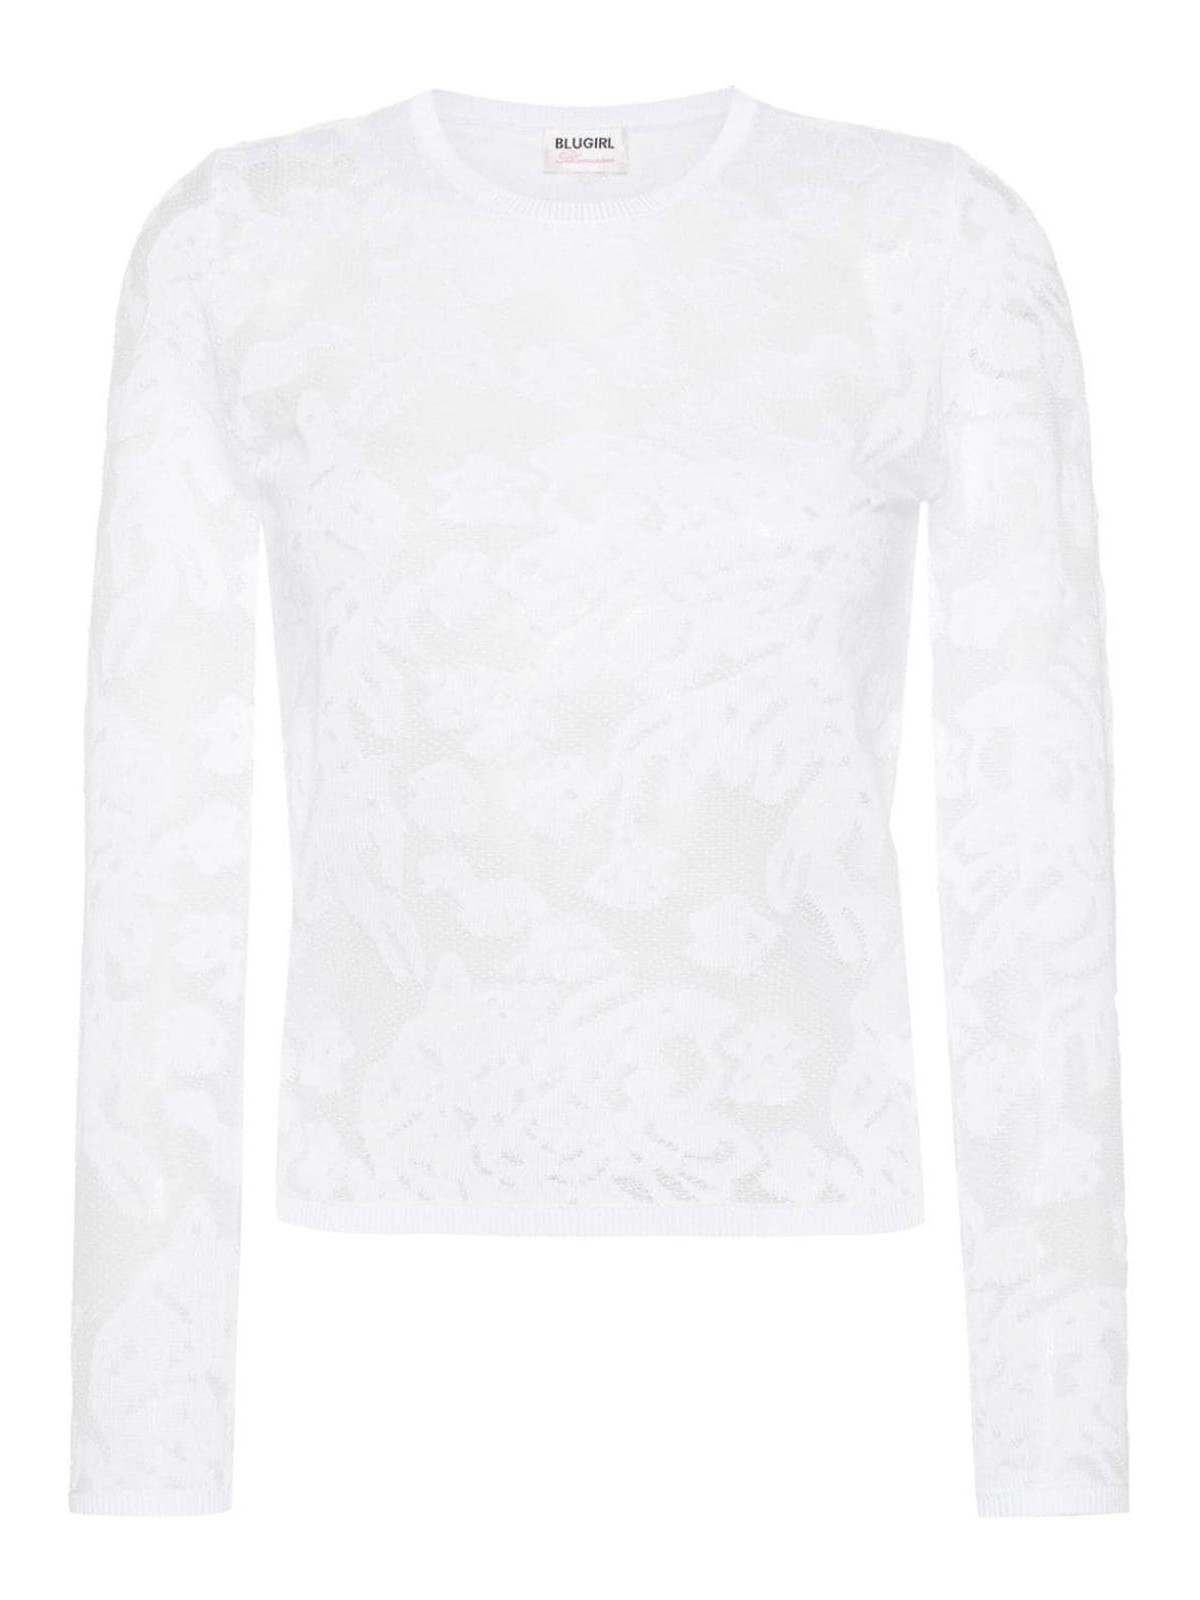 Blugirl 弹性蕾丝设计罩衫 In White